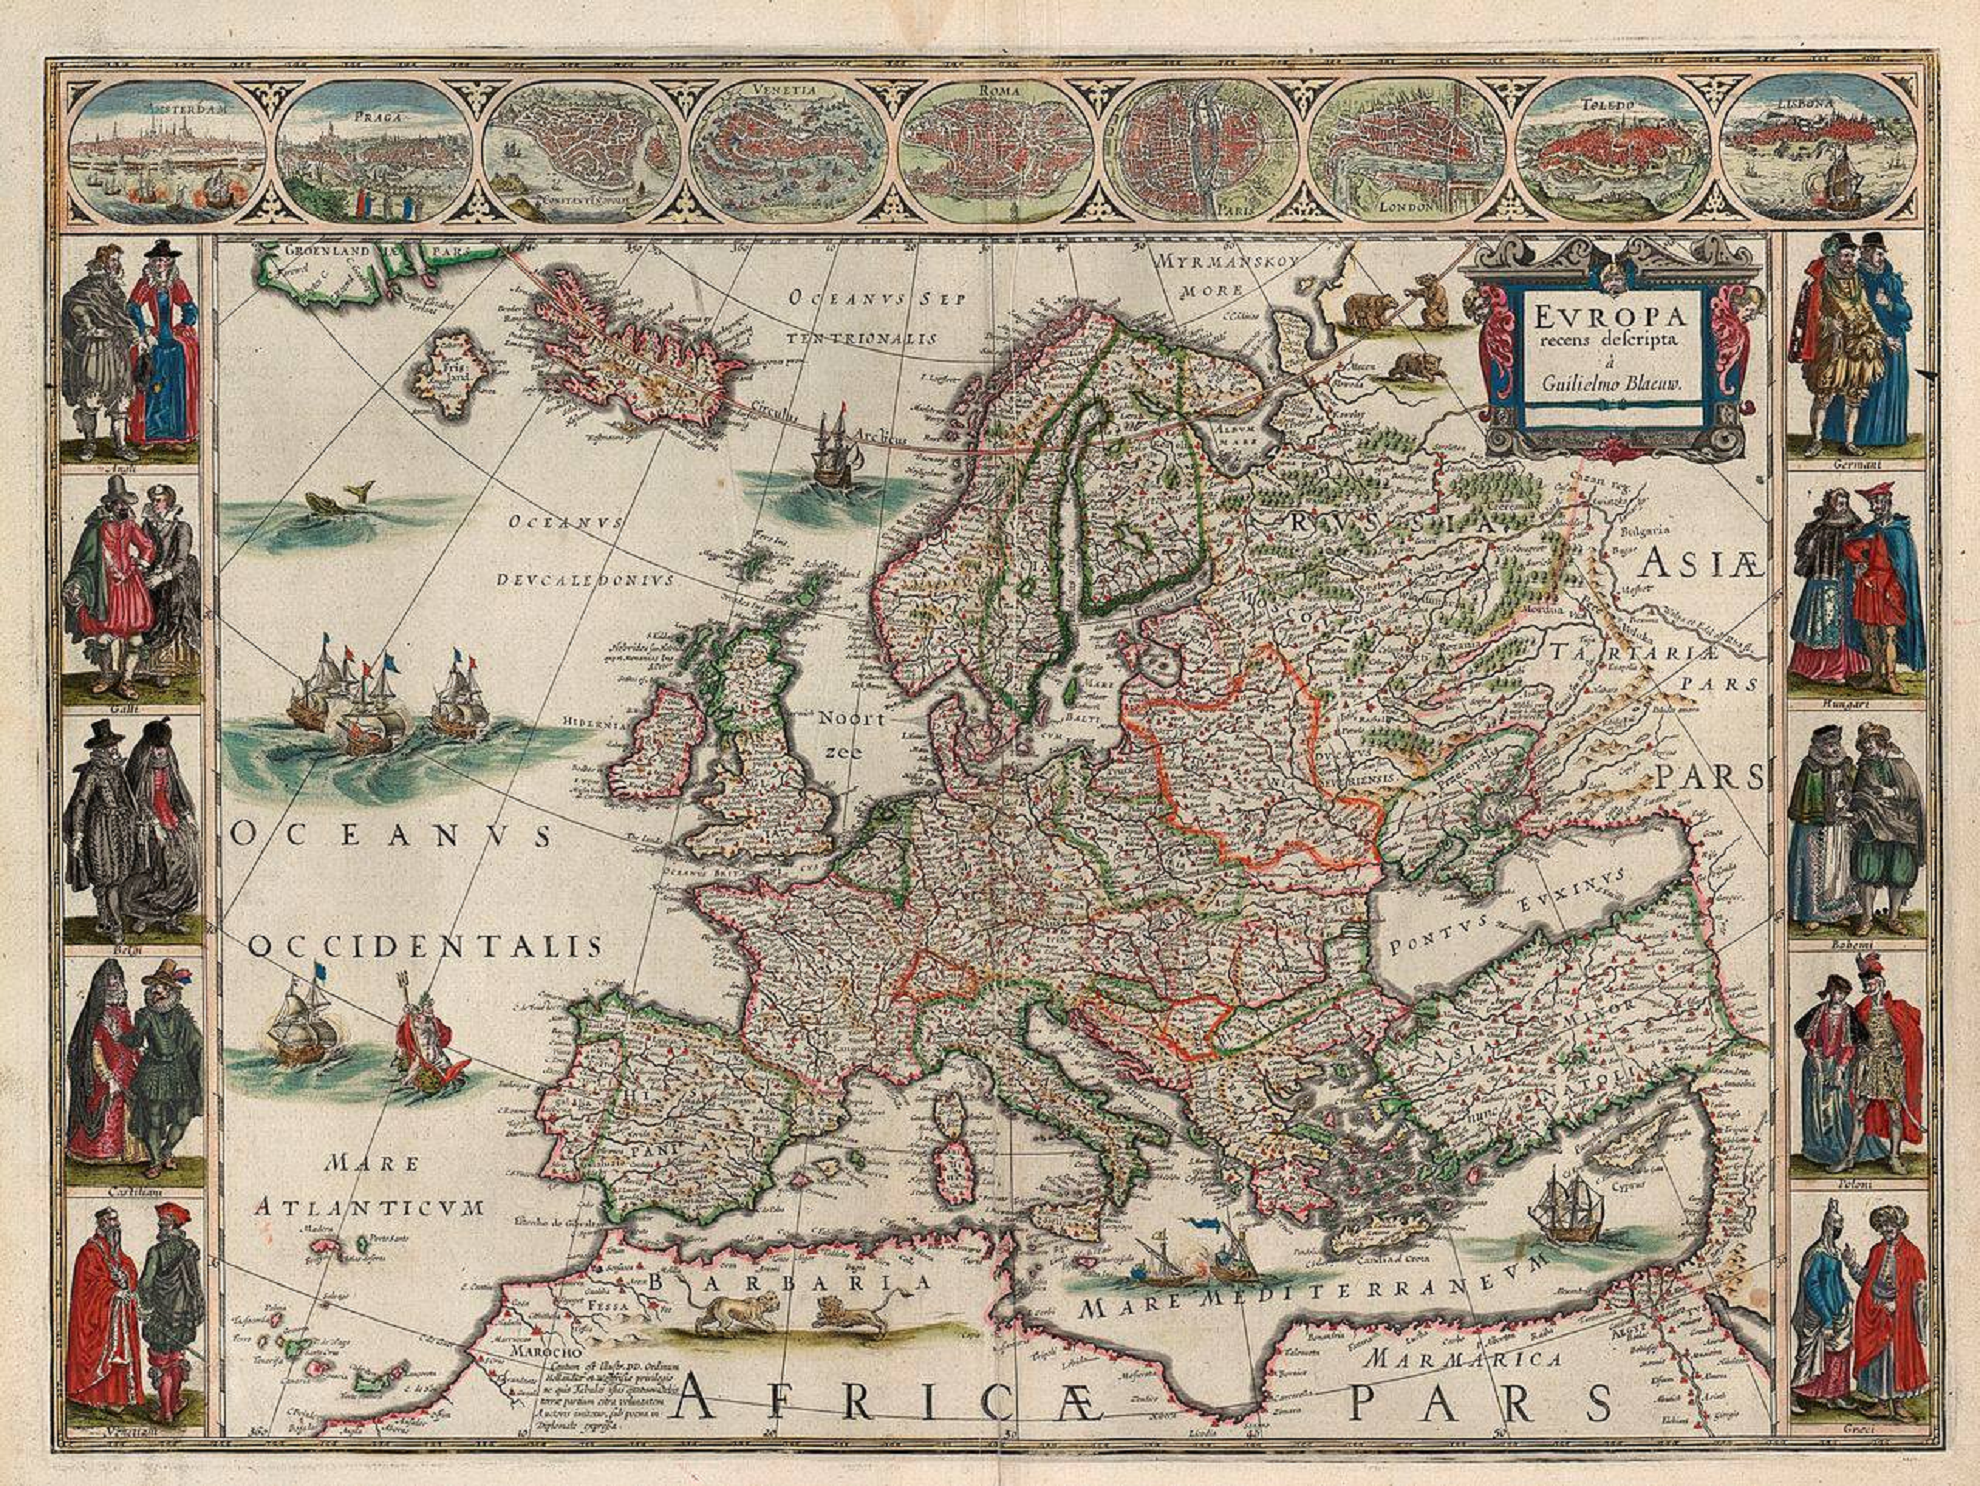 Neix Jan Blaeu, el cartògraf que va dibuixar el mapa de la I República Catalana